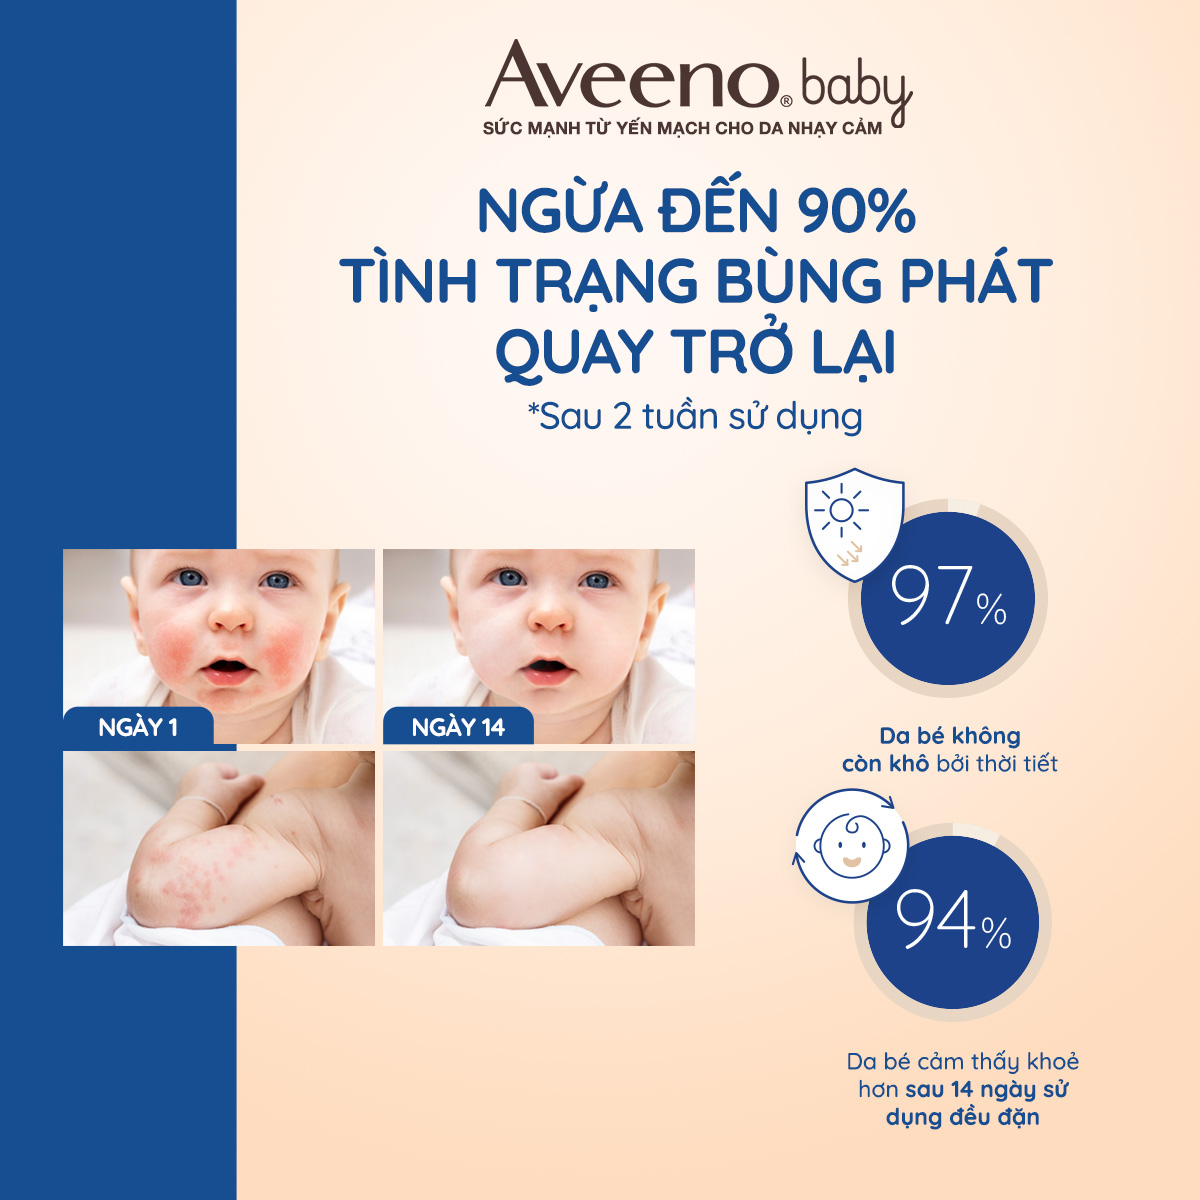 Bộ làm sạch & sữa dưỡng ẩm cho bé da nhạy cảm Aveeno Baby Daily Moisture.